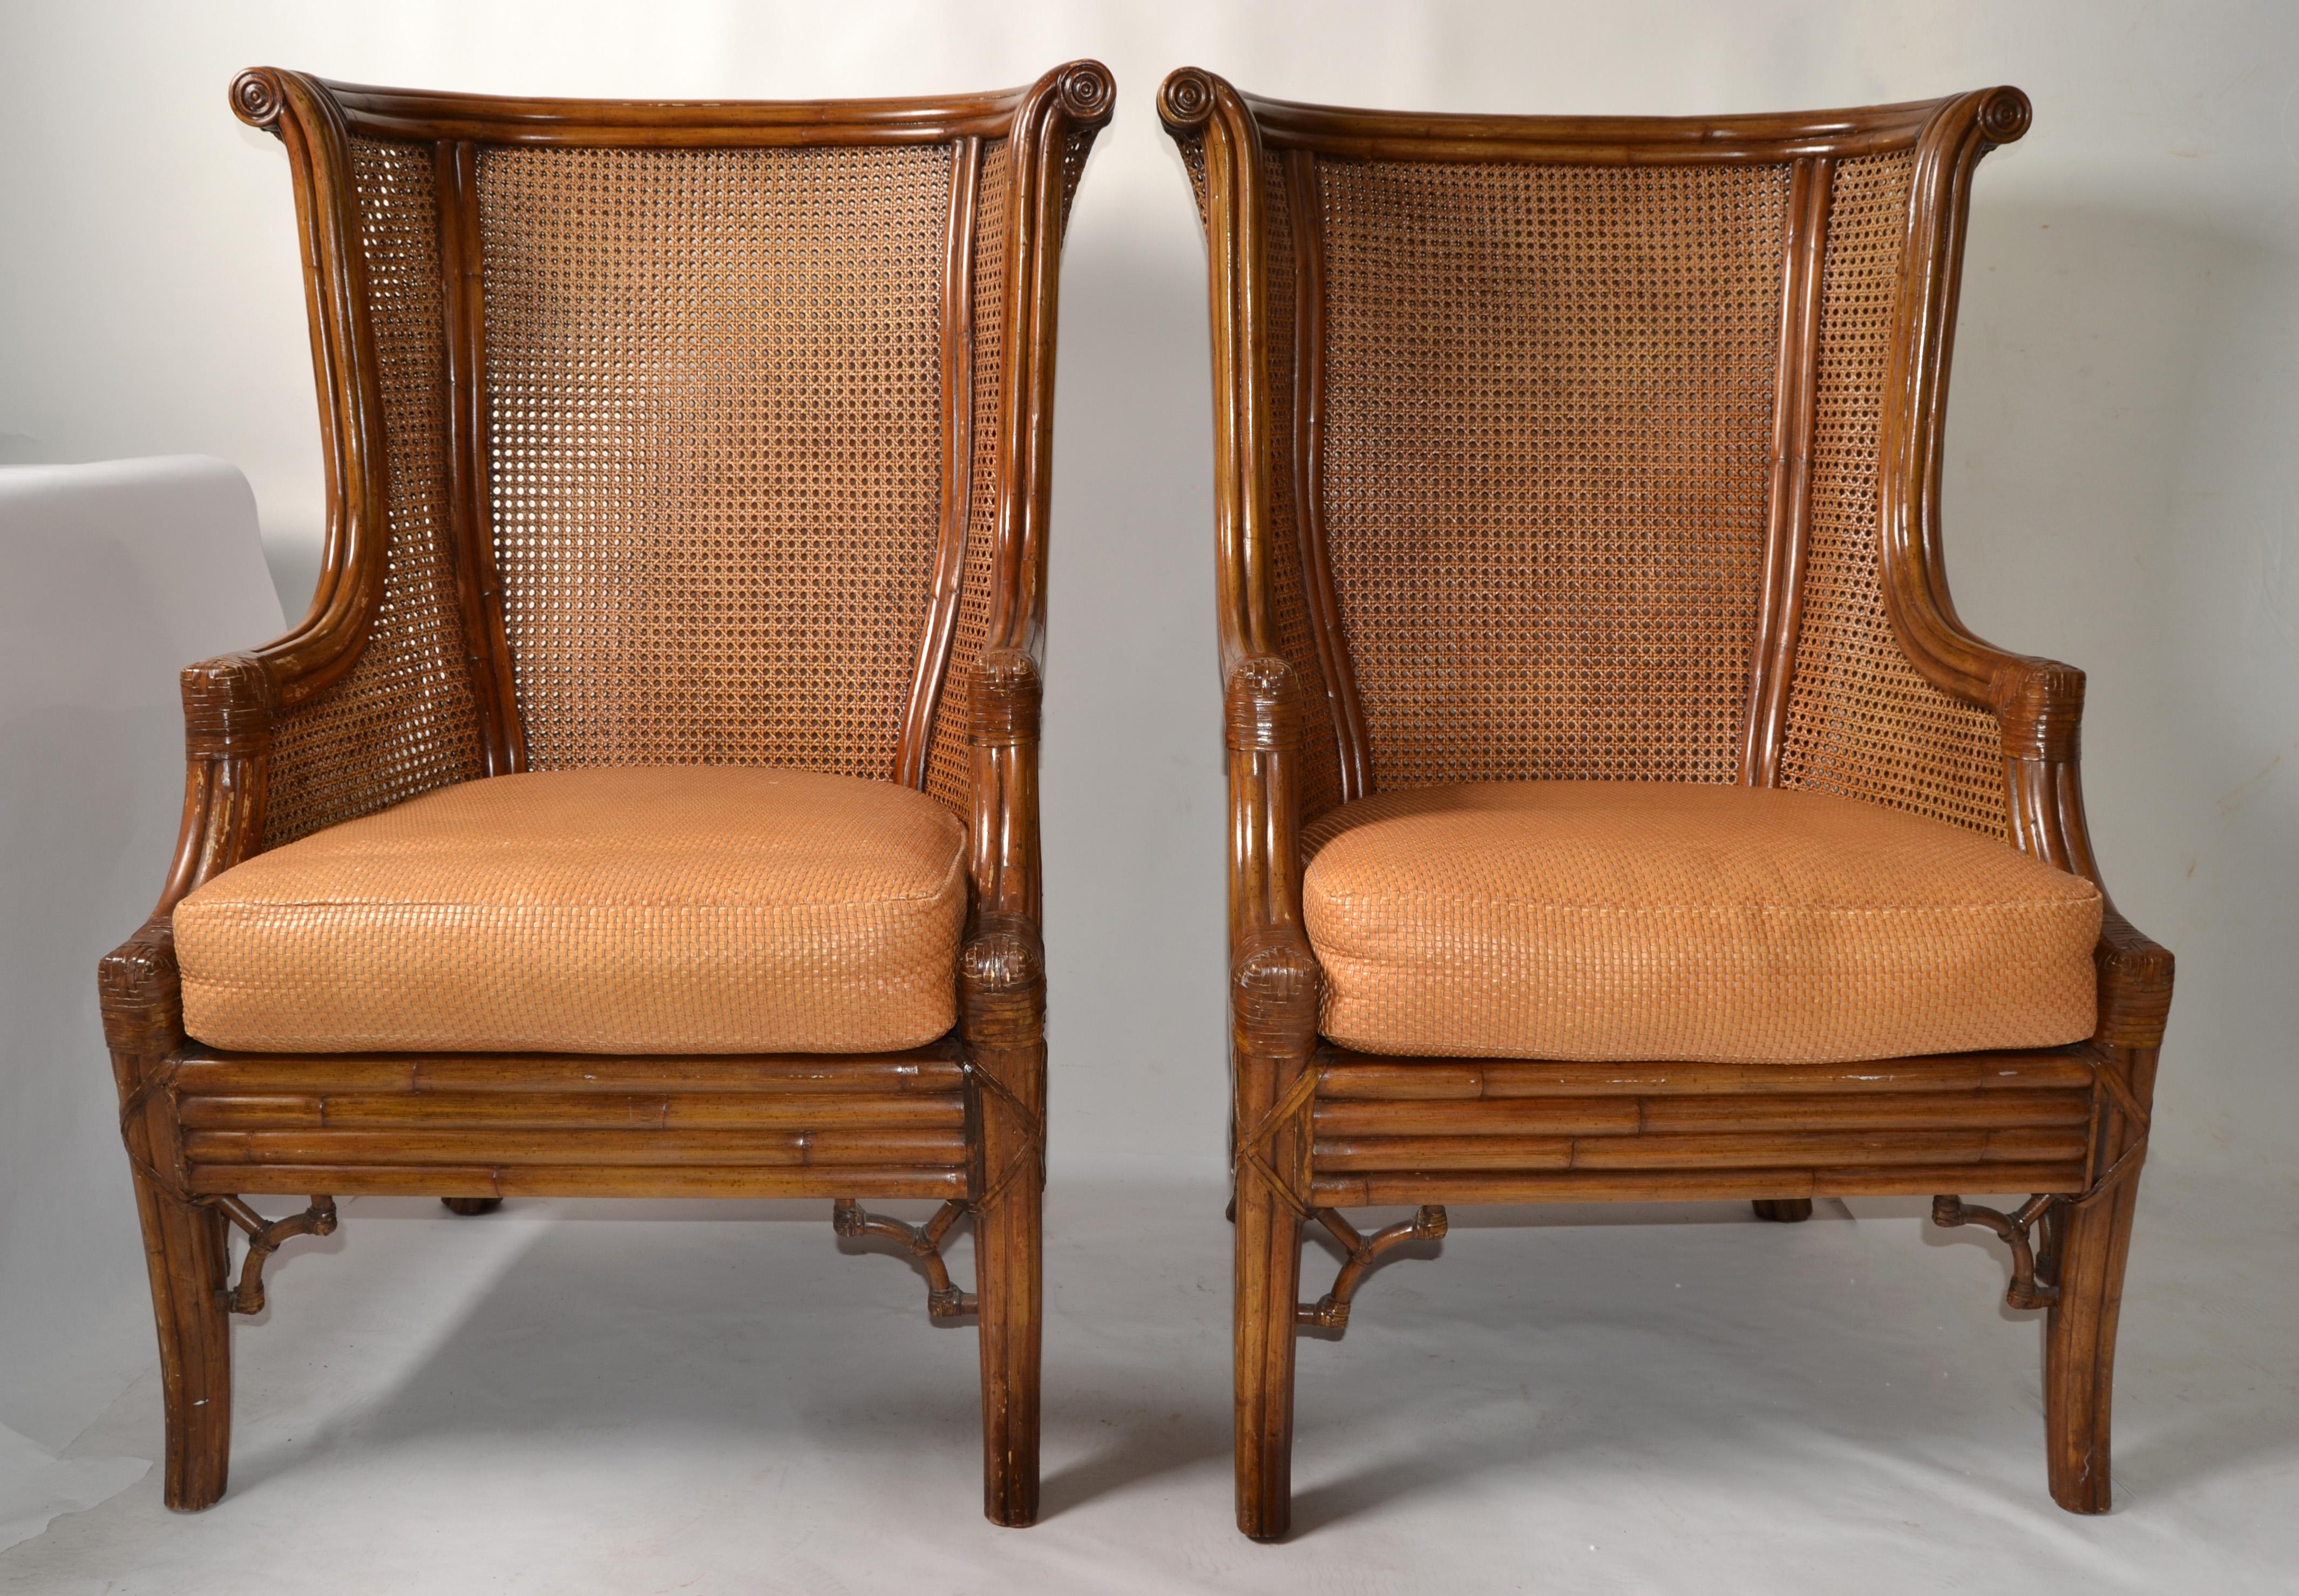 Ein Paar Lane's Wingback Chairs im britischen Kolonialstil aus Bambus, Bambusimitat und handgewebten Caning-Doppelstühlen.
Große Loungesessel im böhmischen Stil mit einem dicken Ledersitzkissen.
Atemberaubende Schnitzereien an der Spitze, sehr